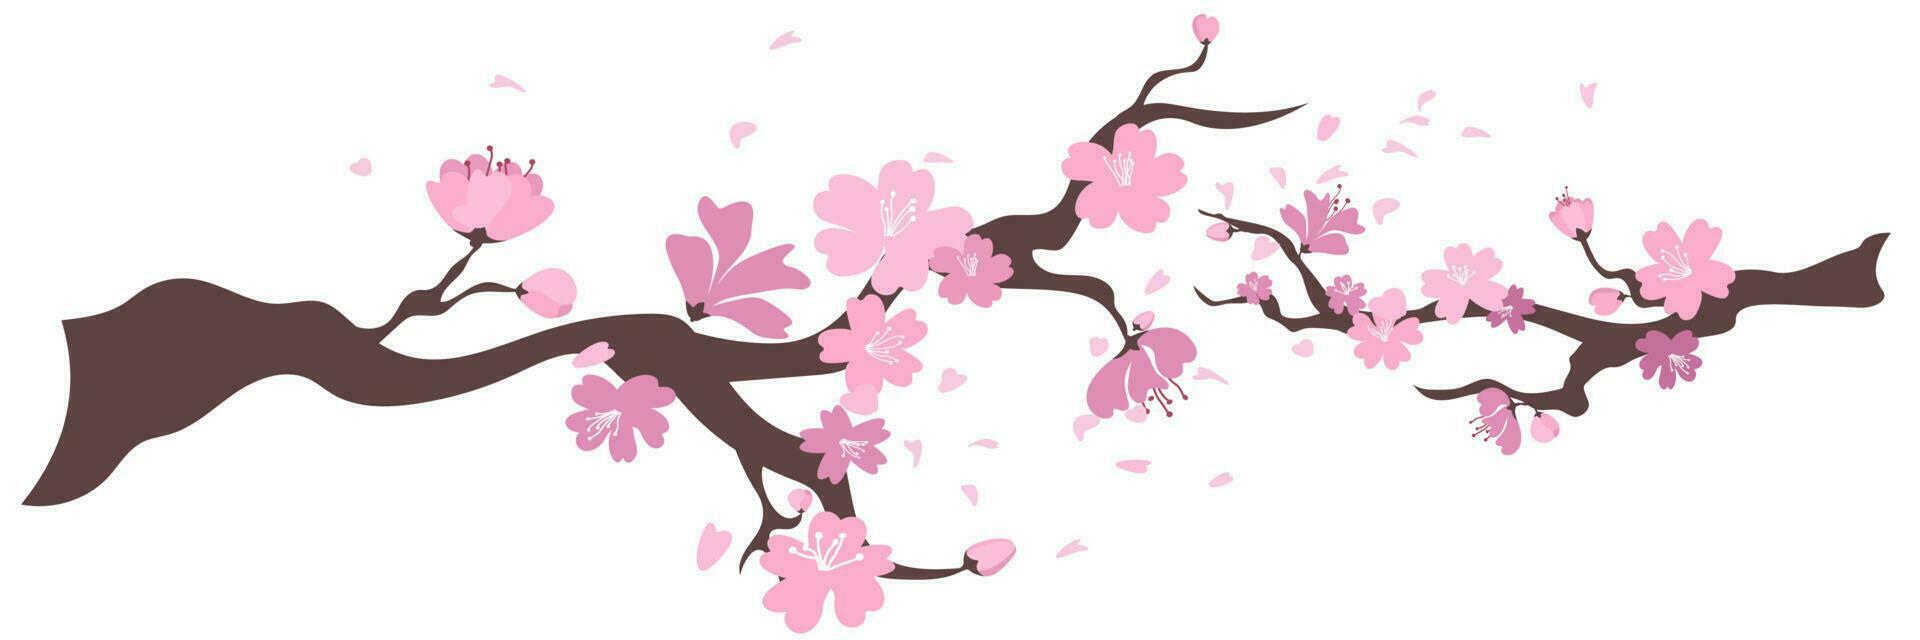 Sakura Blumen rahmen. Hintergrund mit blühen Kirsche Baum Geäst. japanisch Blumen auf Weiß Hintergrund. Vektor Illustration.